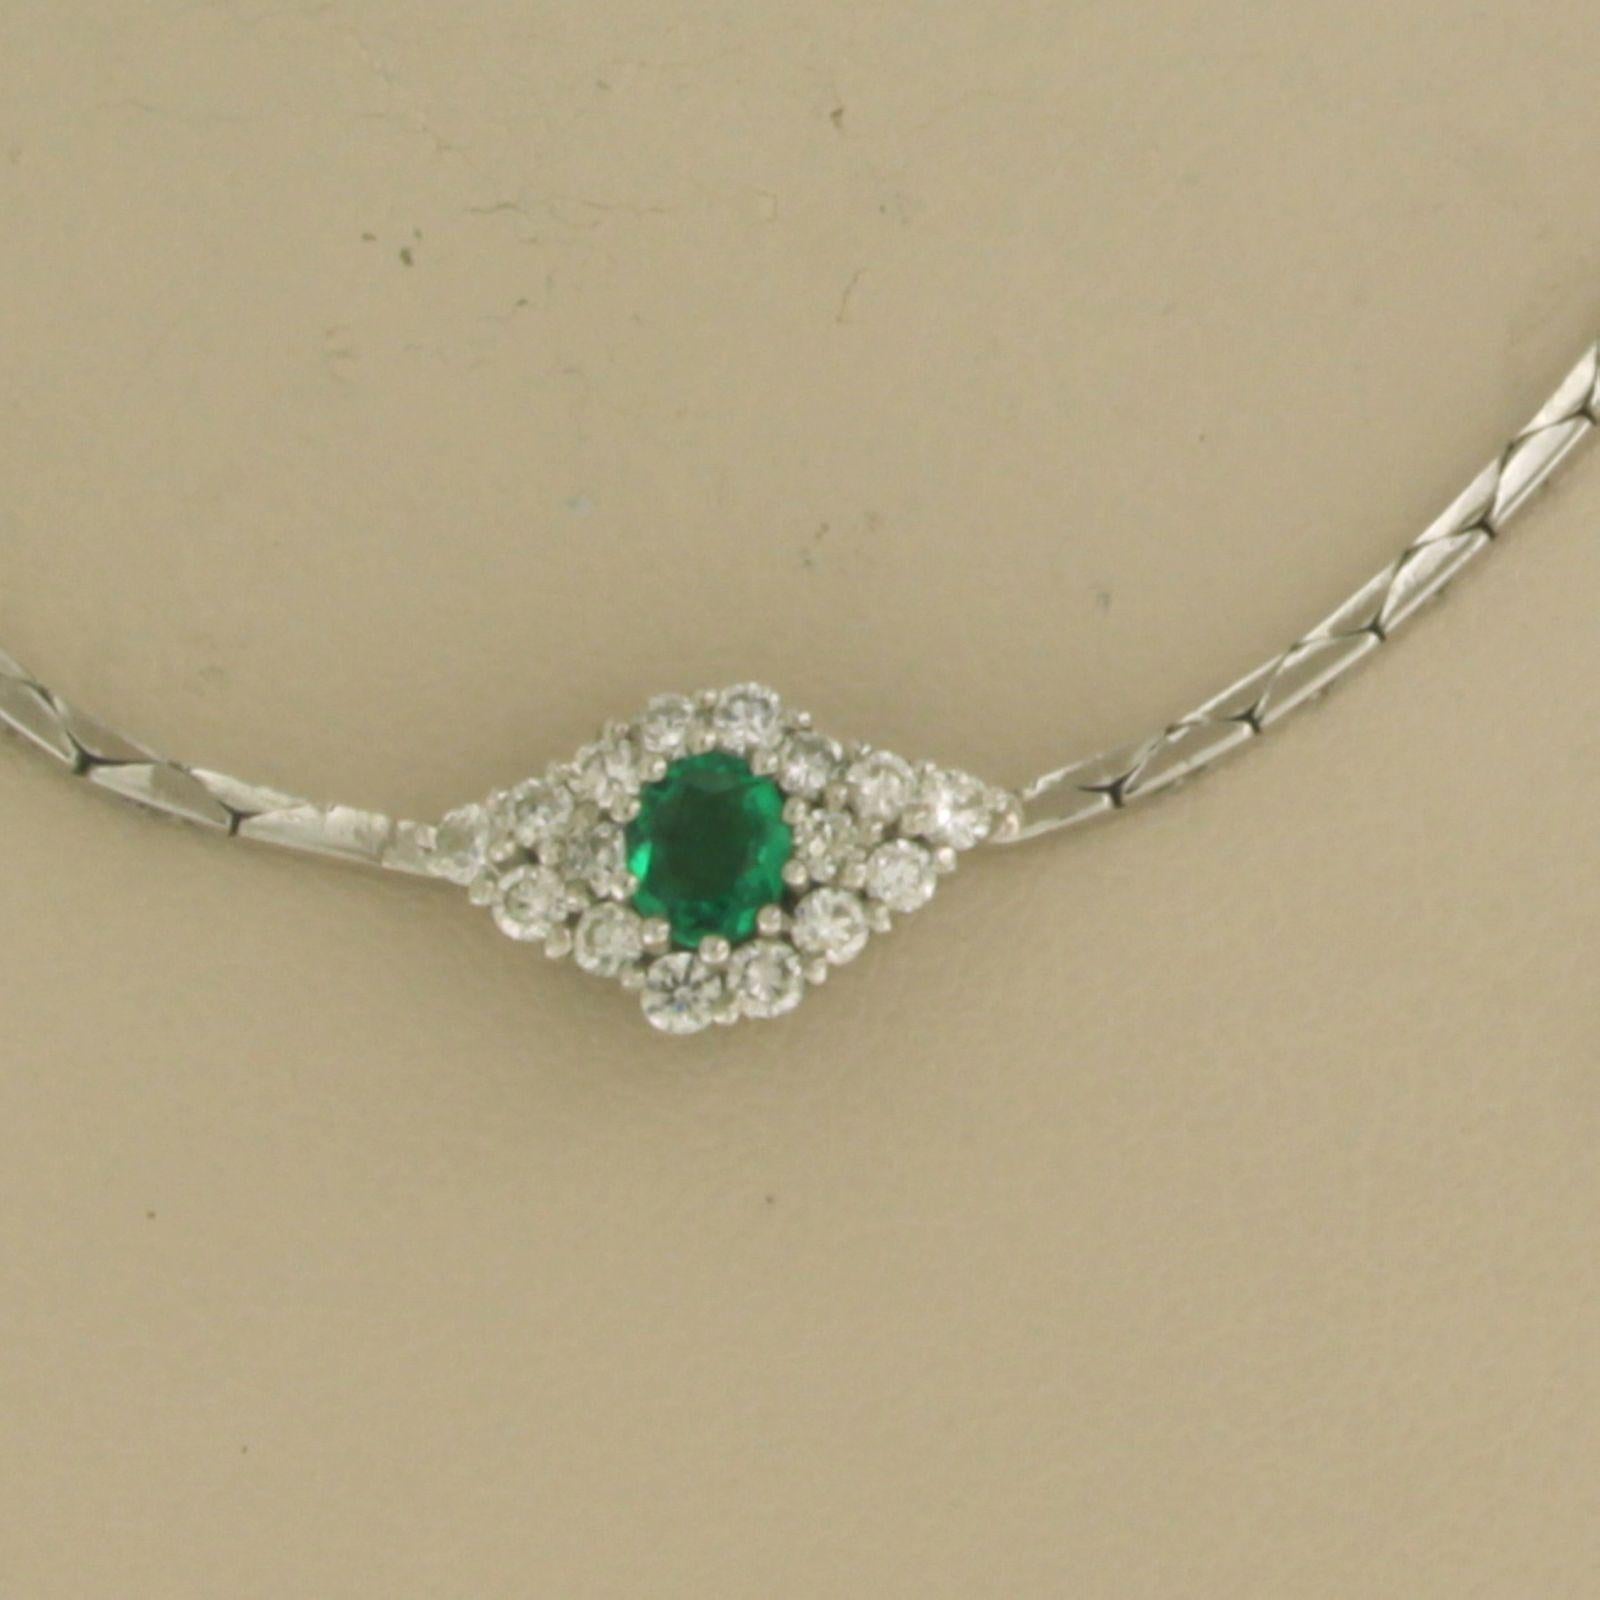 18k Weißgold Halskette mit Smaragd zu setzen. 0,40ct und Diamant im Brillantschliff 0,40ct - F/G - VS/SI - 40 cm lang

Ausführliche Beschreibung

die Länge der Kette ist 40 cm lang und 1,3 mm breit

die Abmessungen des Mittelstücks sind 1,3 cm breit